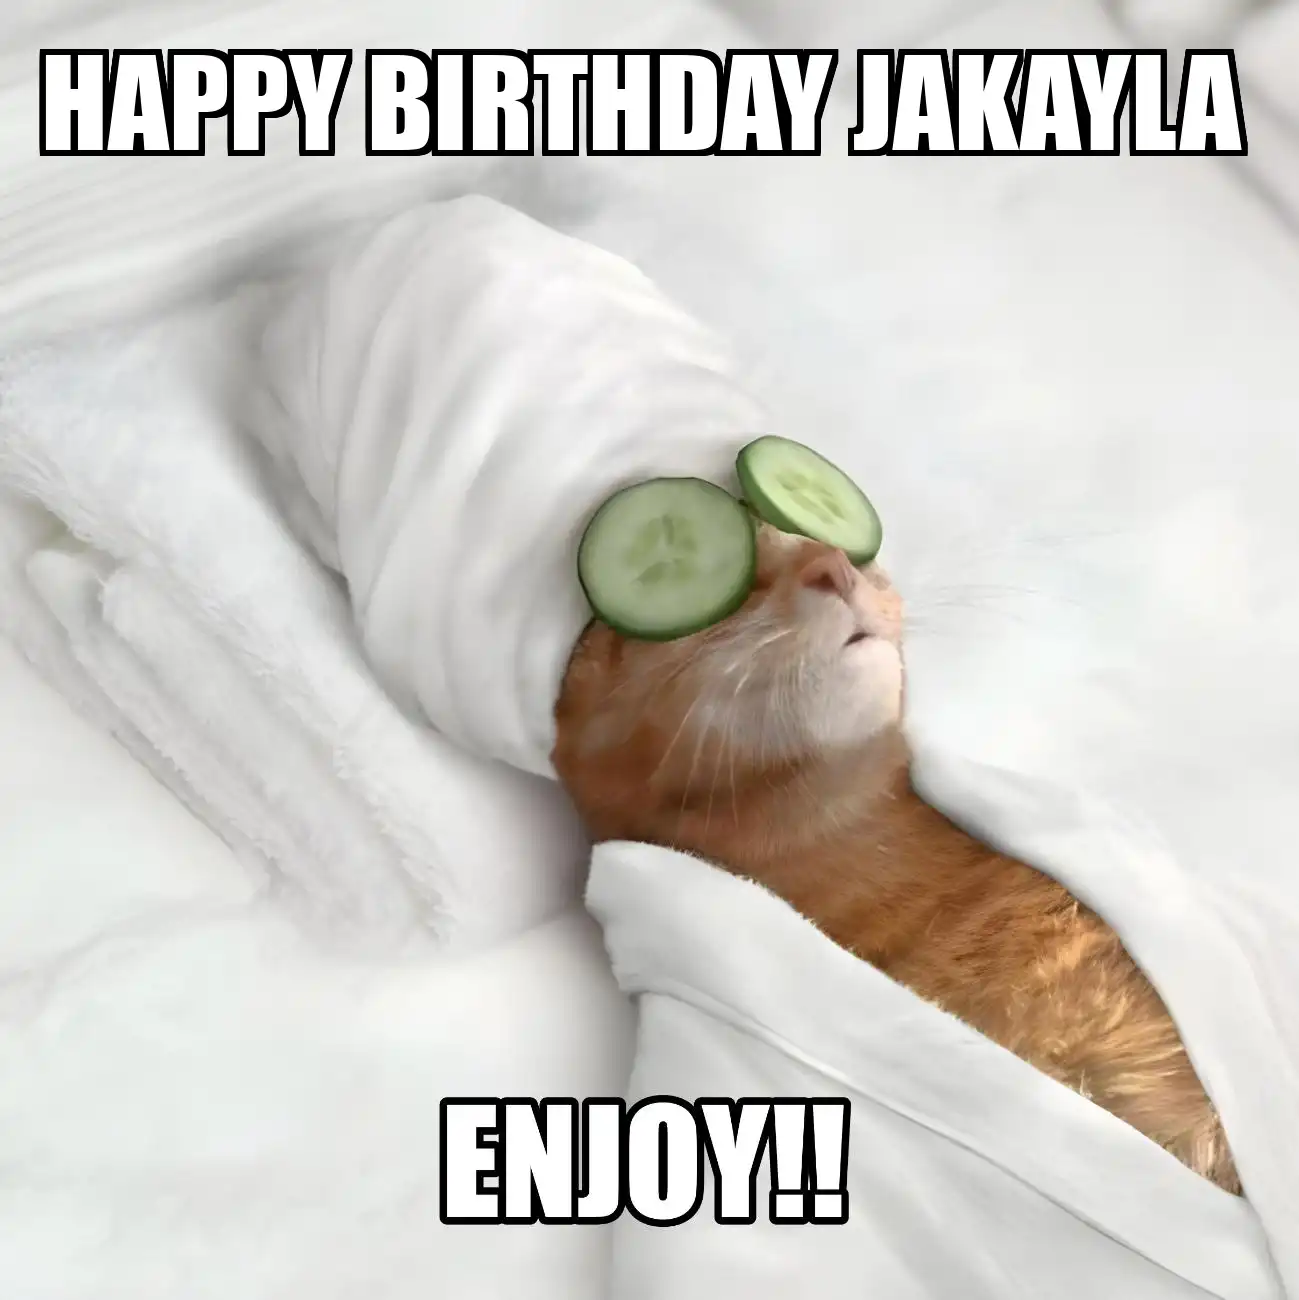 Happy Birthday Jakayla Enjoy Cat Meme